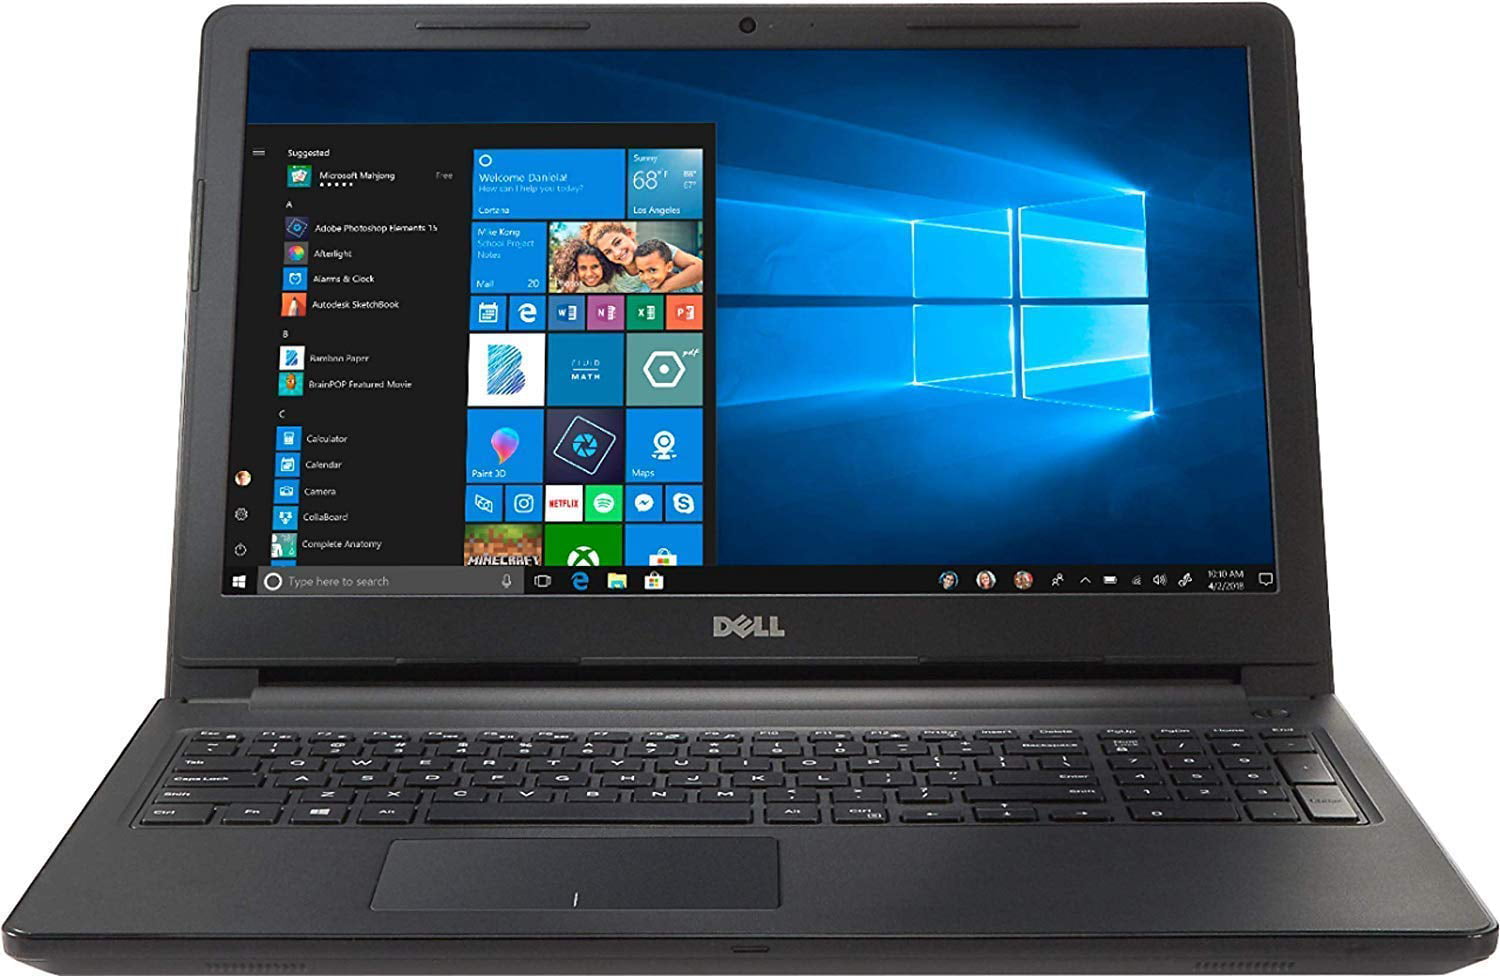 Dell Inspiron 15.6-inch HD Premium Laptop PC, Intel Dual Core i3